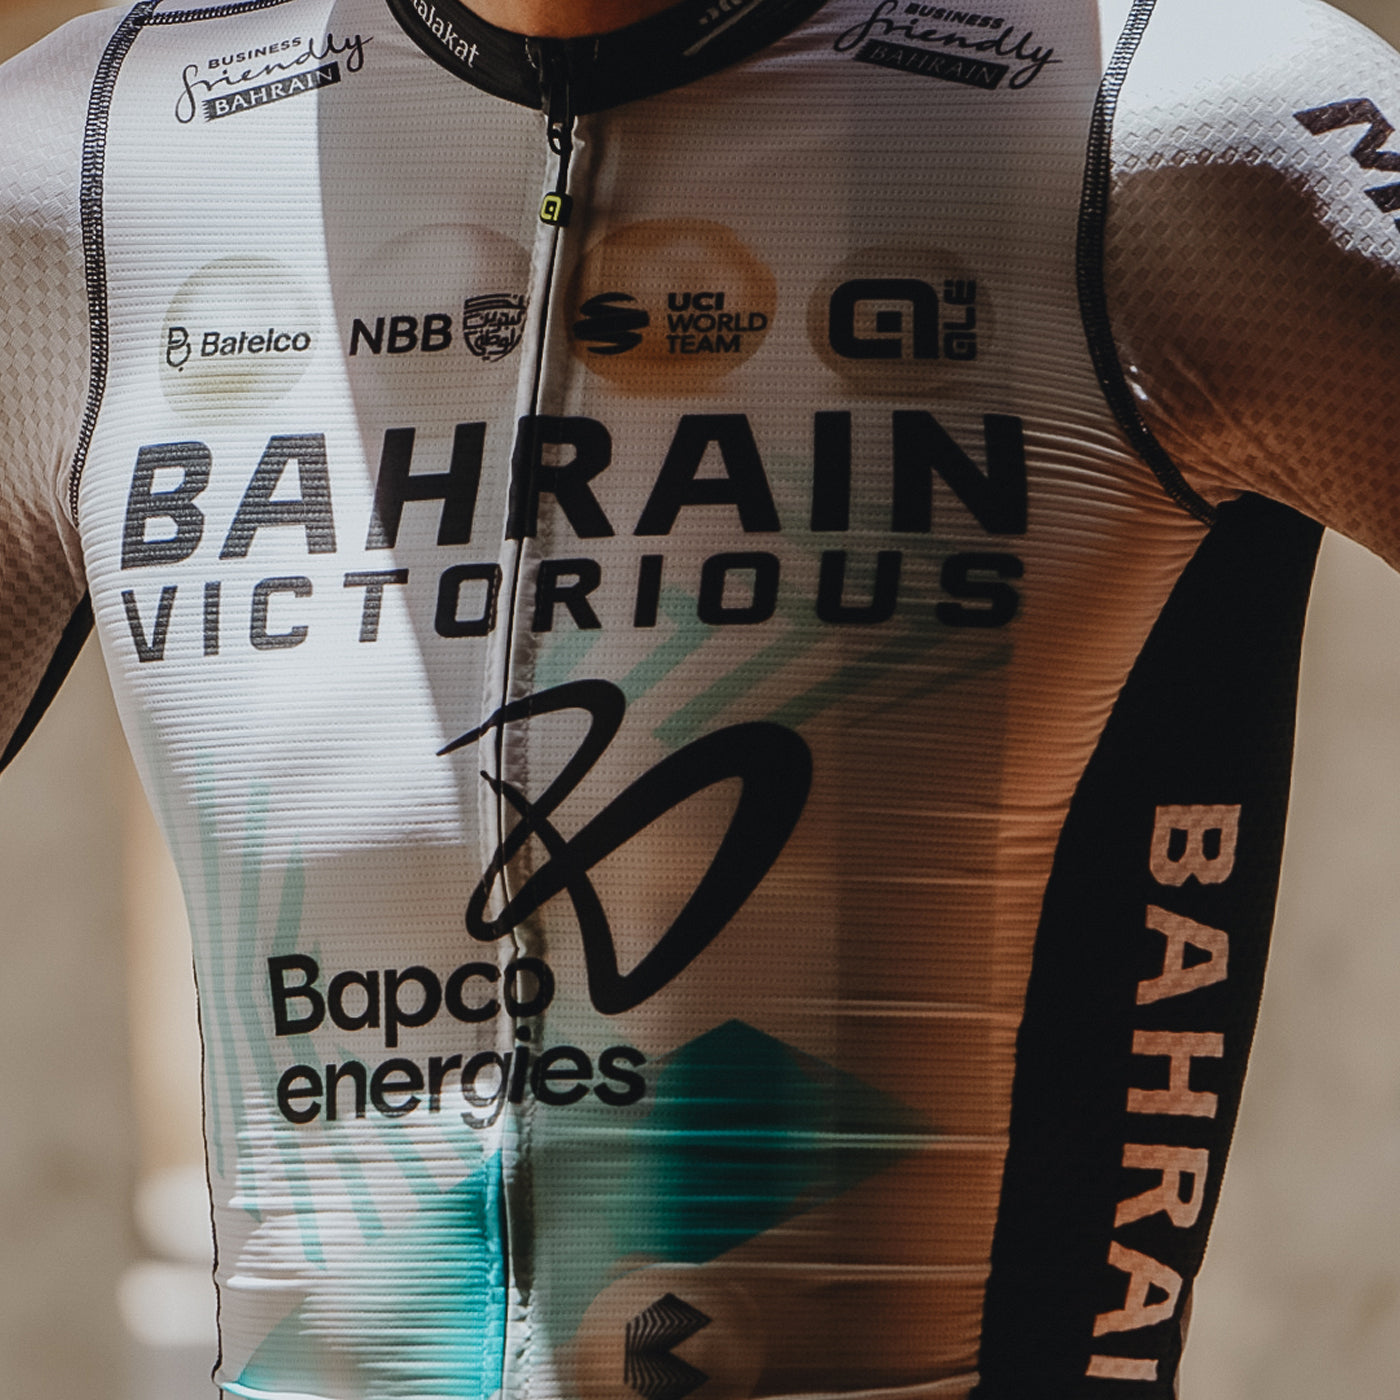 Bahrain Victorious 2023 PRS trikot - Tour de France